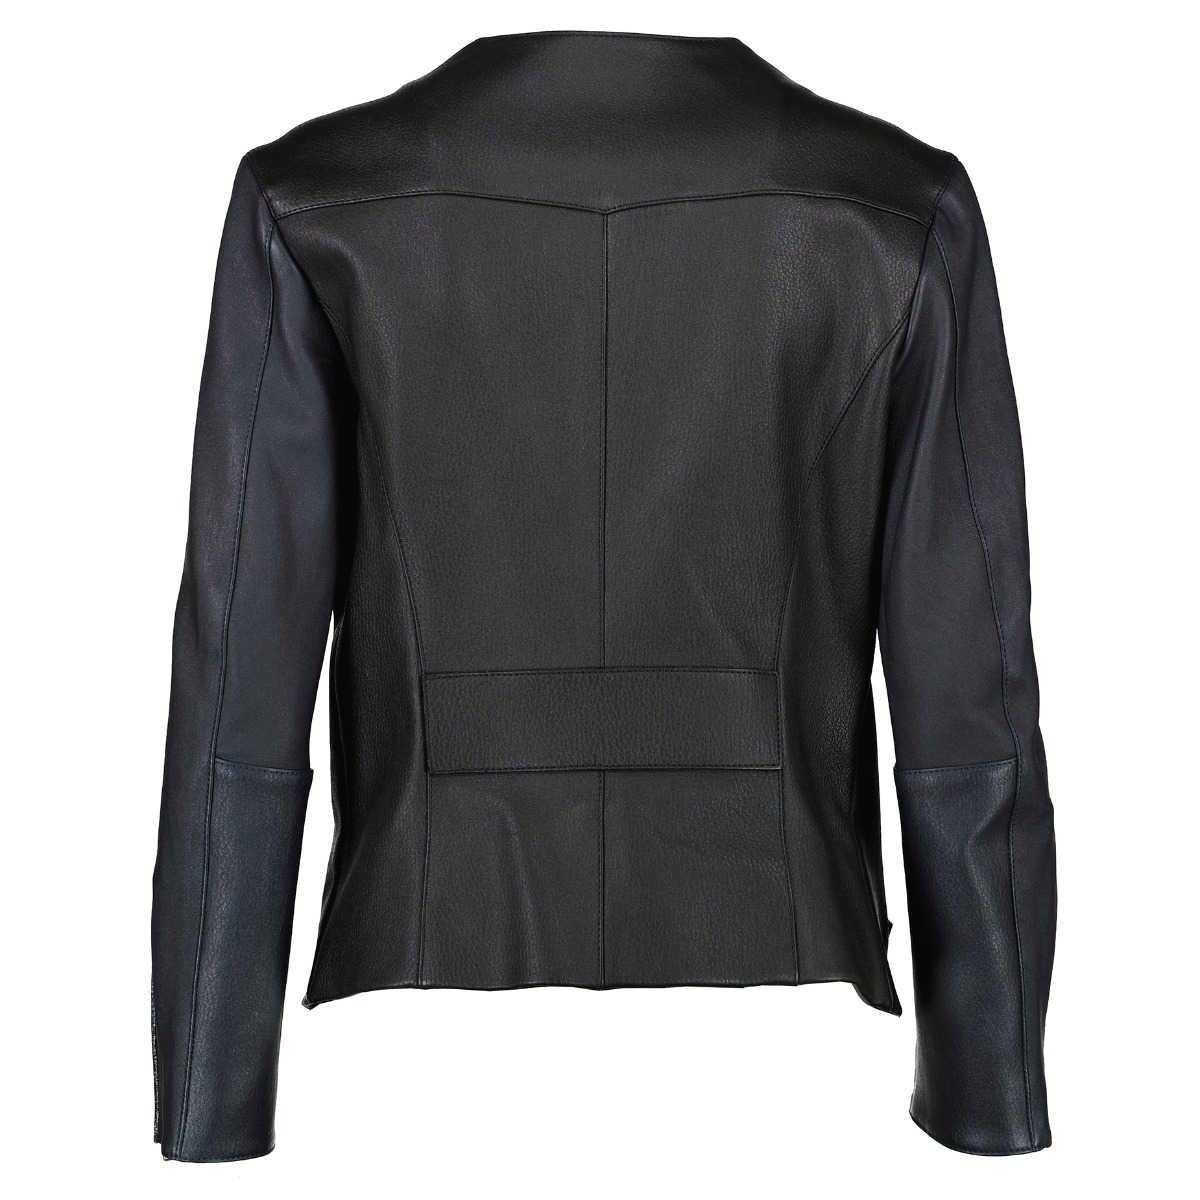 Authentic LOUIS VUITTON Leather jacket #241-003-105-2653